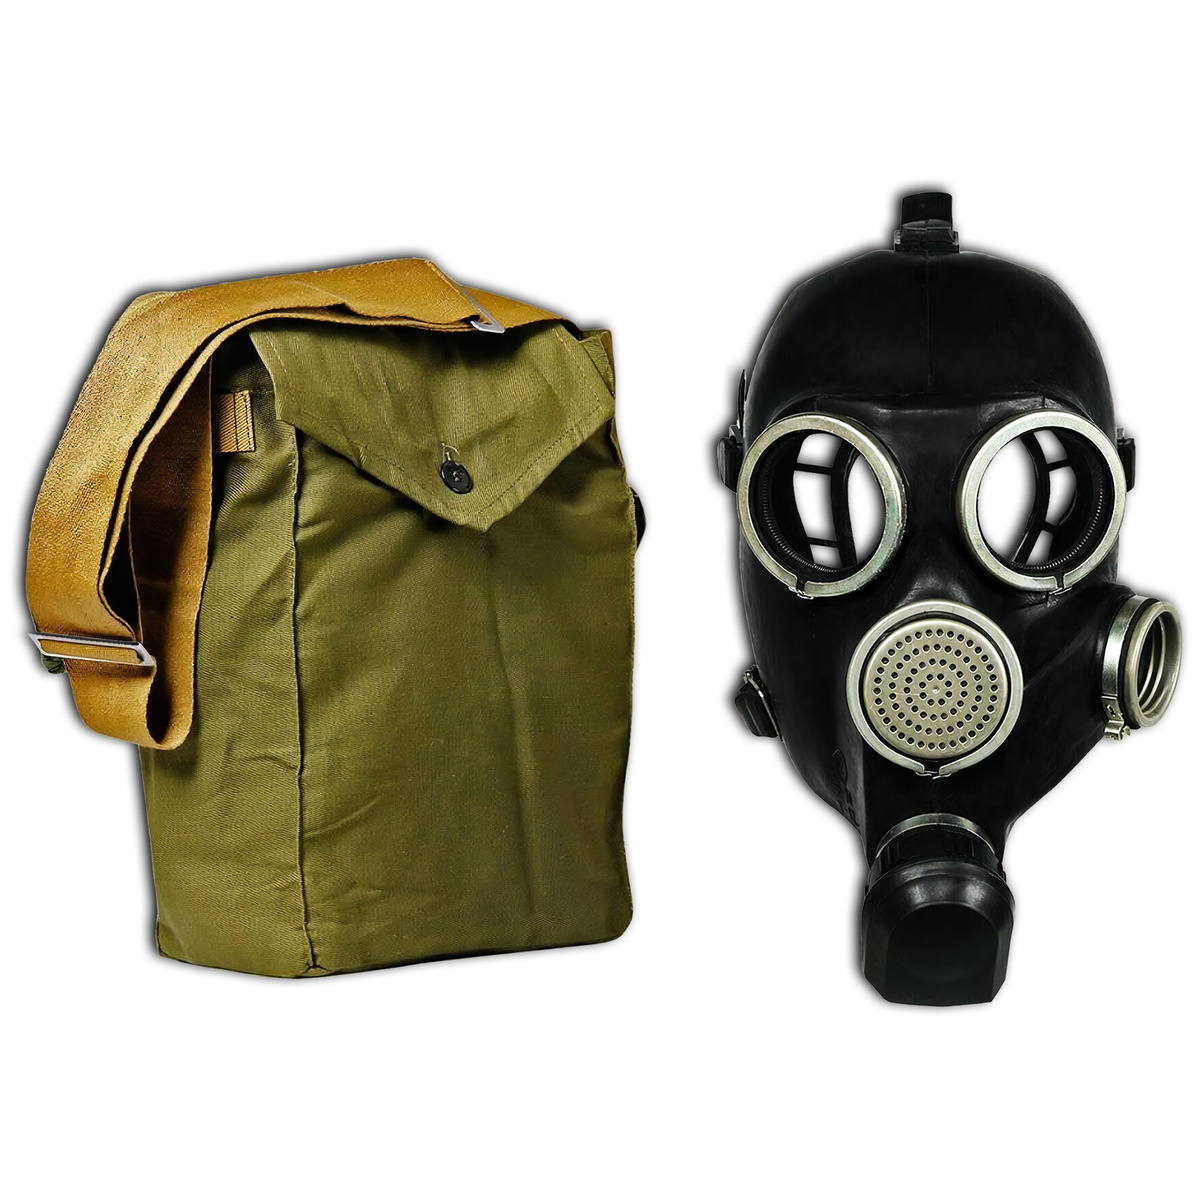 1. Сувенирная маска-противогаз сталкера   2. Походная сумка с регулируемым наплечным ремешком  *маска-противогаз сувенирная, не является средством защиты, фильтр в комплект НЕ входит